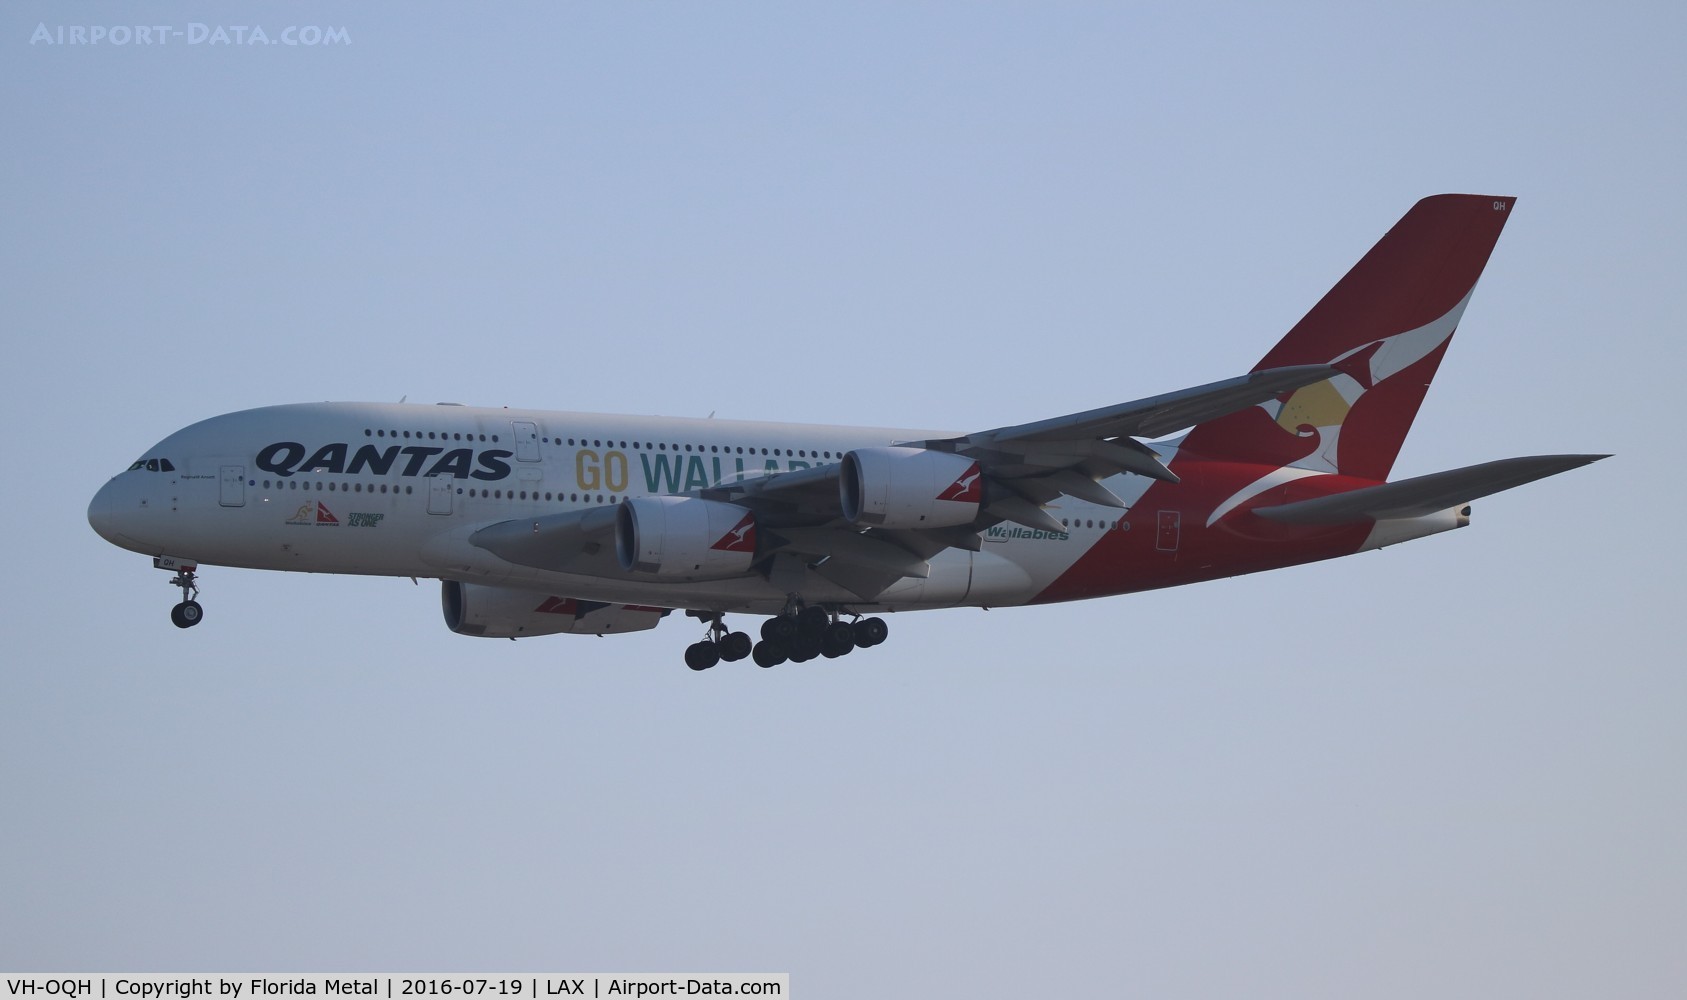 VH-OQH, 2009 Airbus A380-842 C/N 050, Qantas